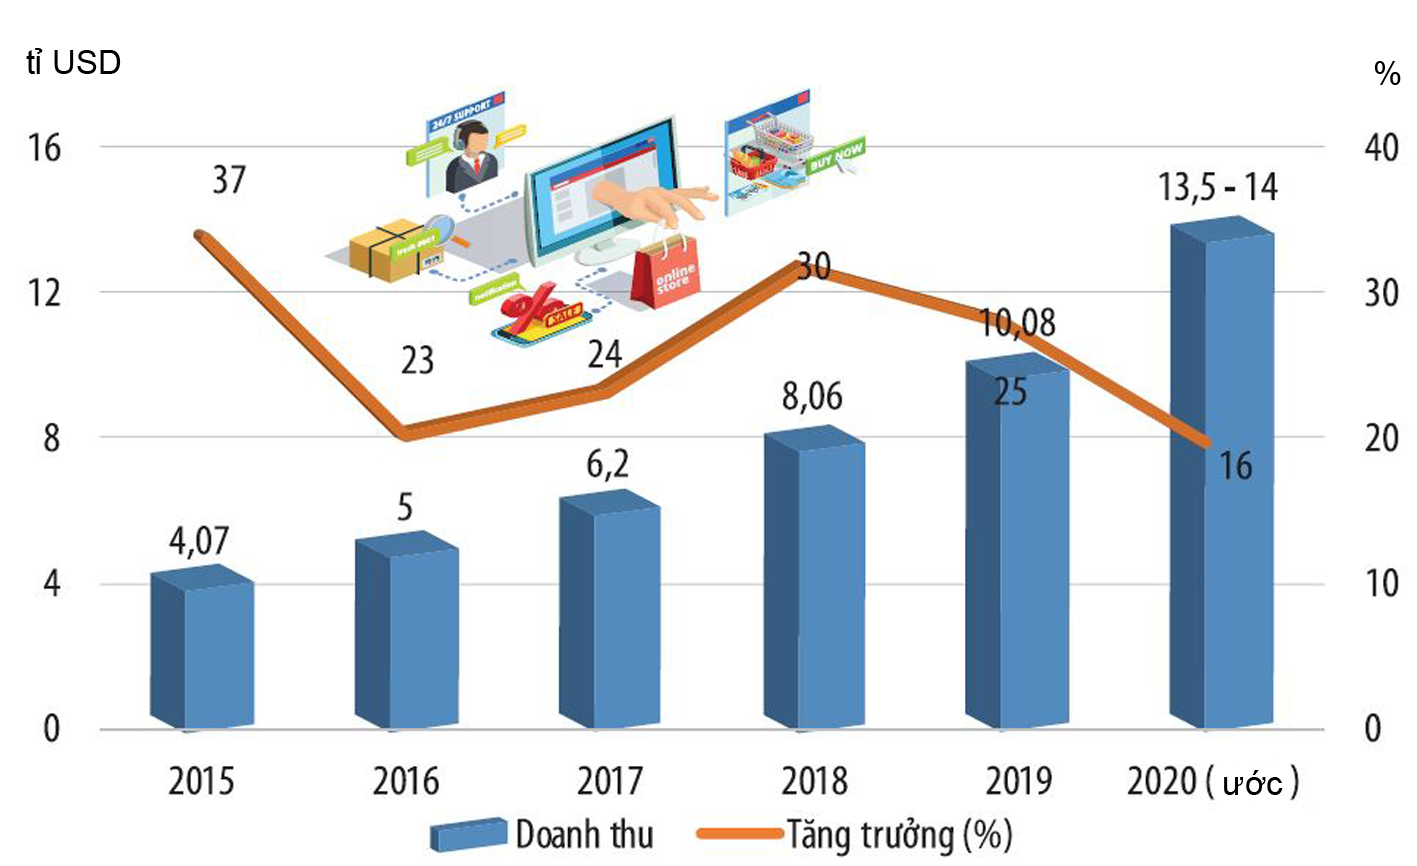  Tăng trưởng quy mô thị trường thương mại điện tử Việt Nam. Nguồn: Sách Trắng thương mại điện tử Việt Nam.